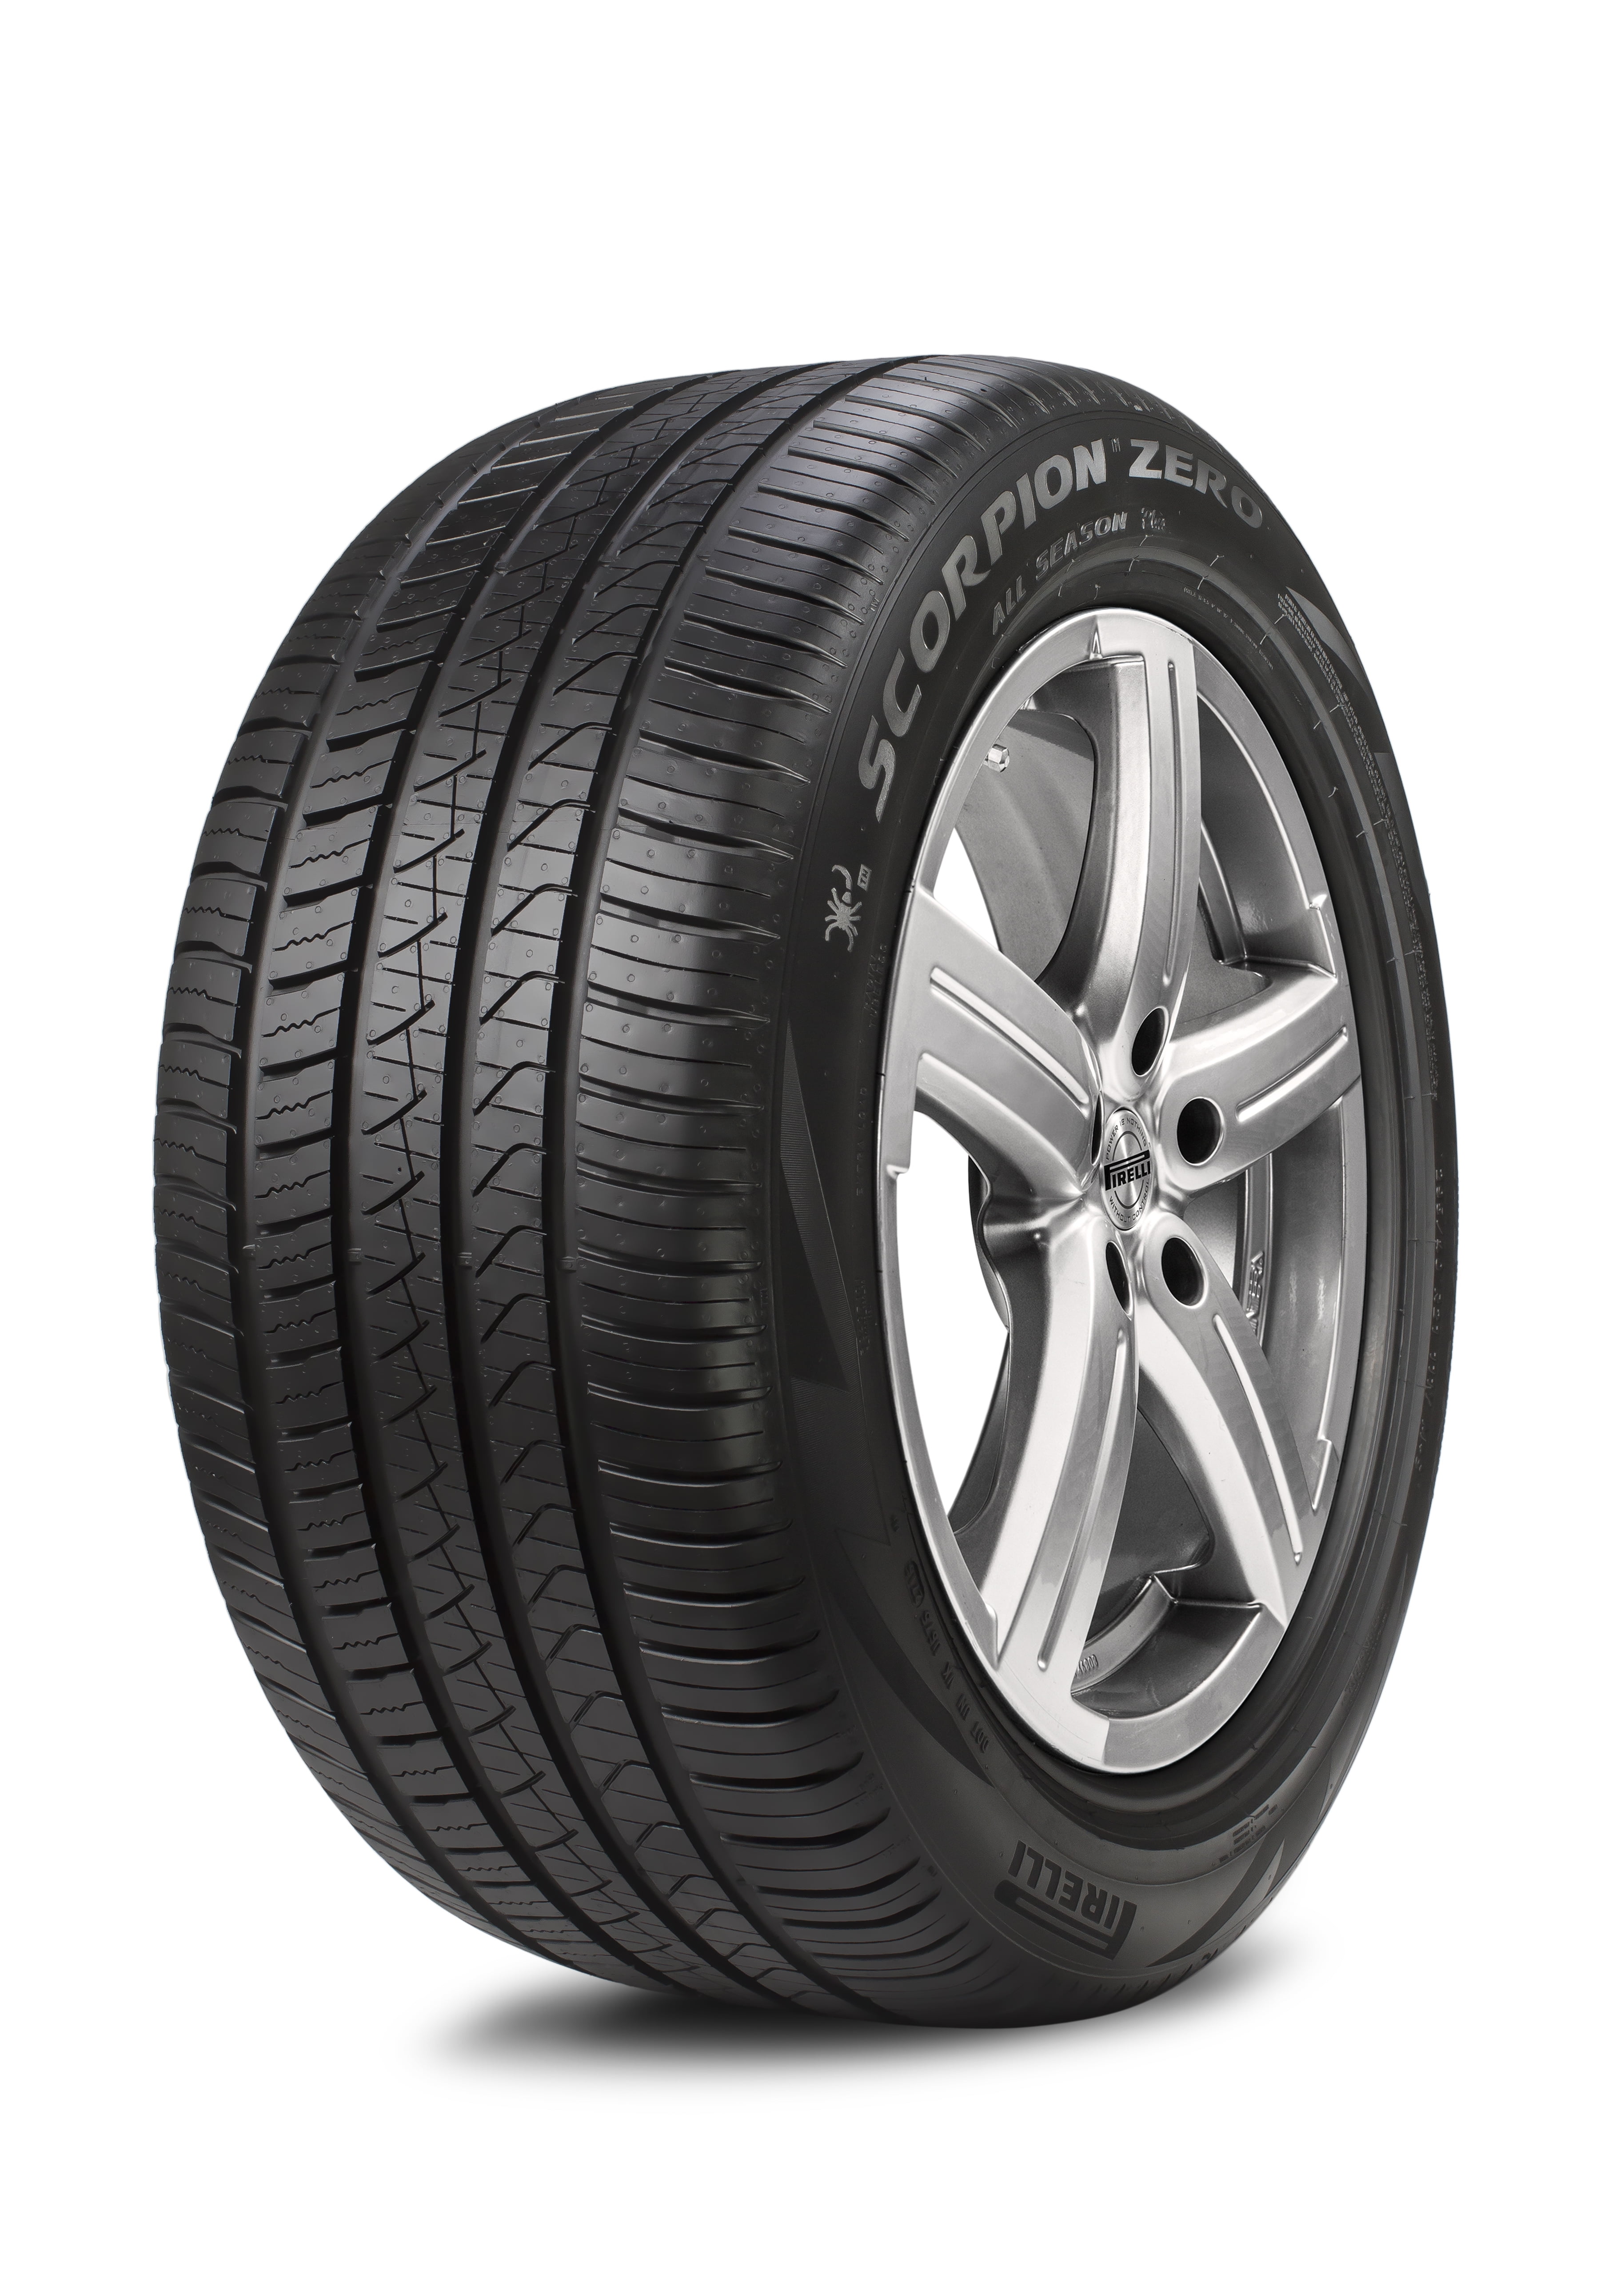 180/55R18 Pirelli 2504100 MT60 RS Dual Sport Rear Tire